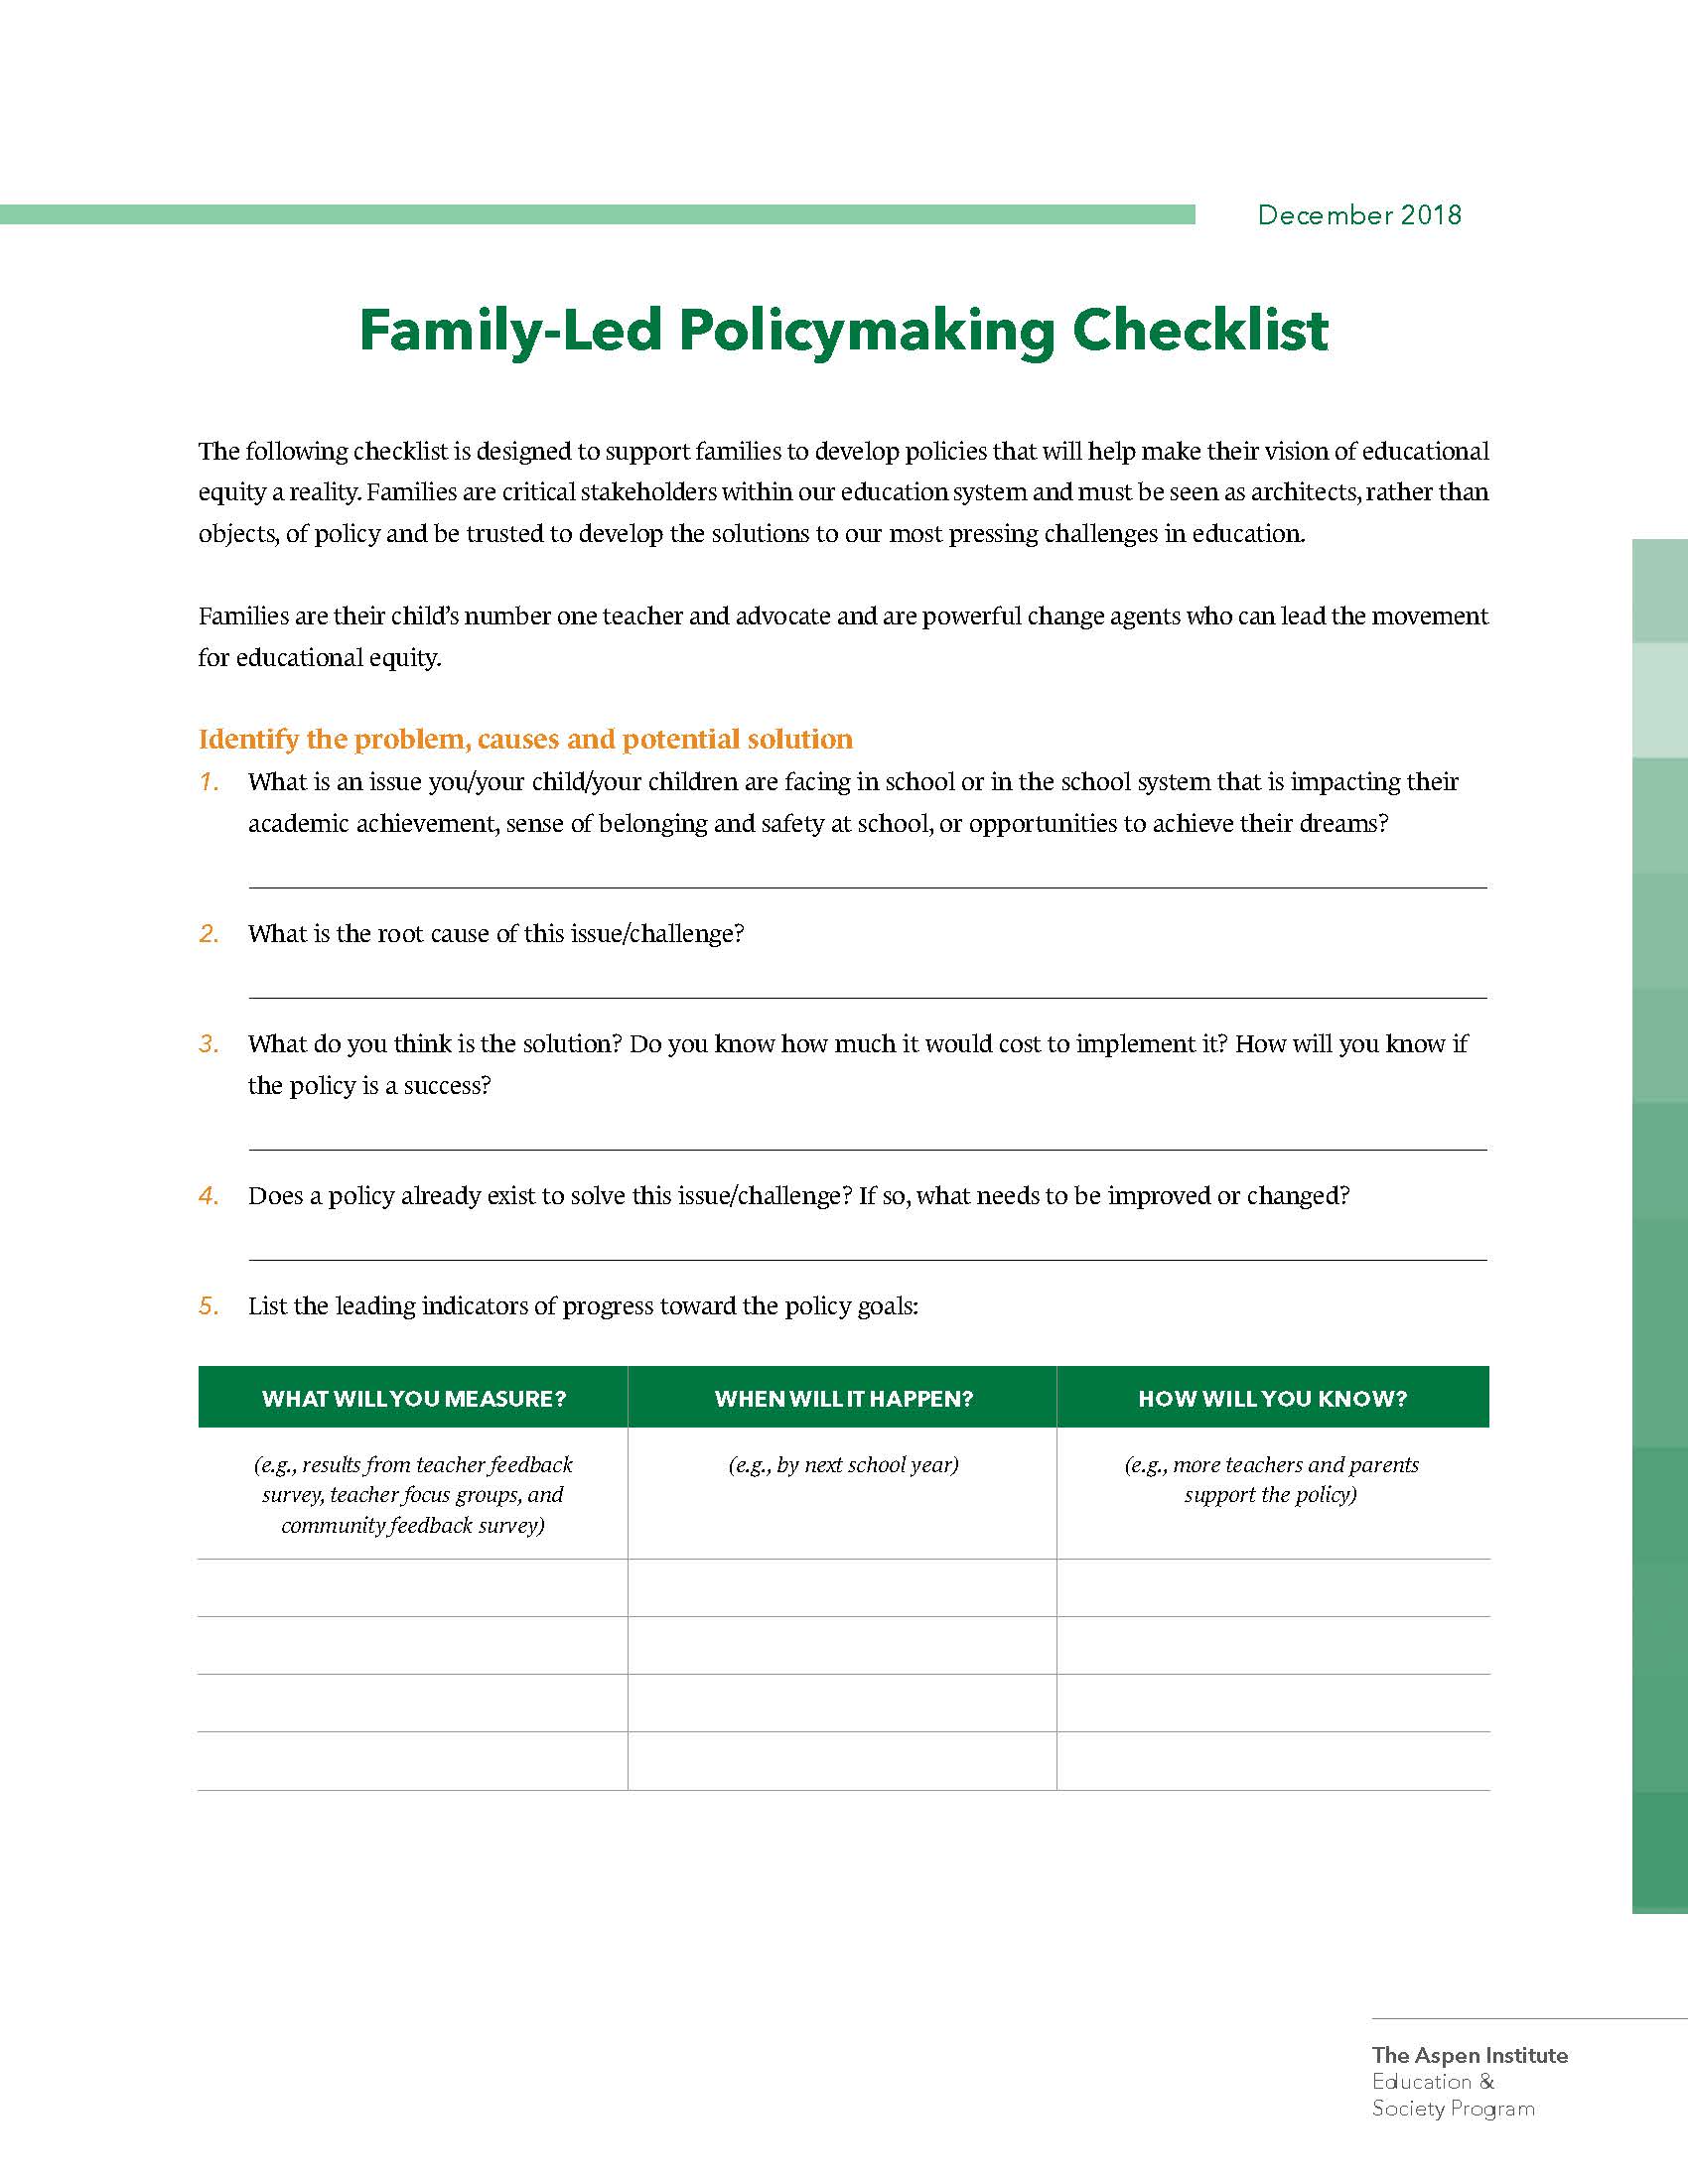 صنع السياسات التي تقودها الأسرة Checklist_Page_1